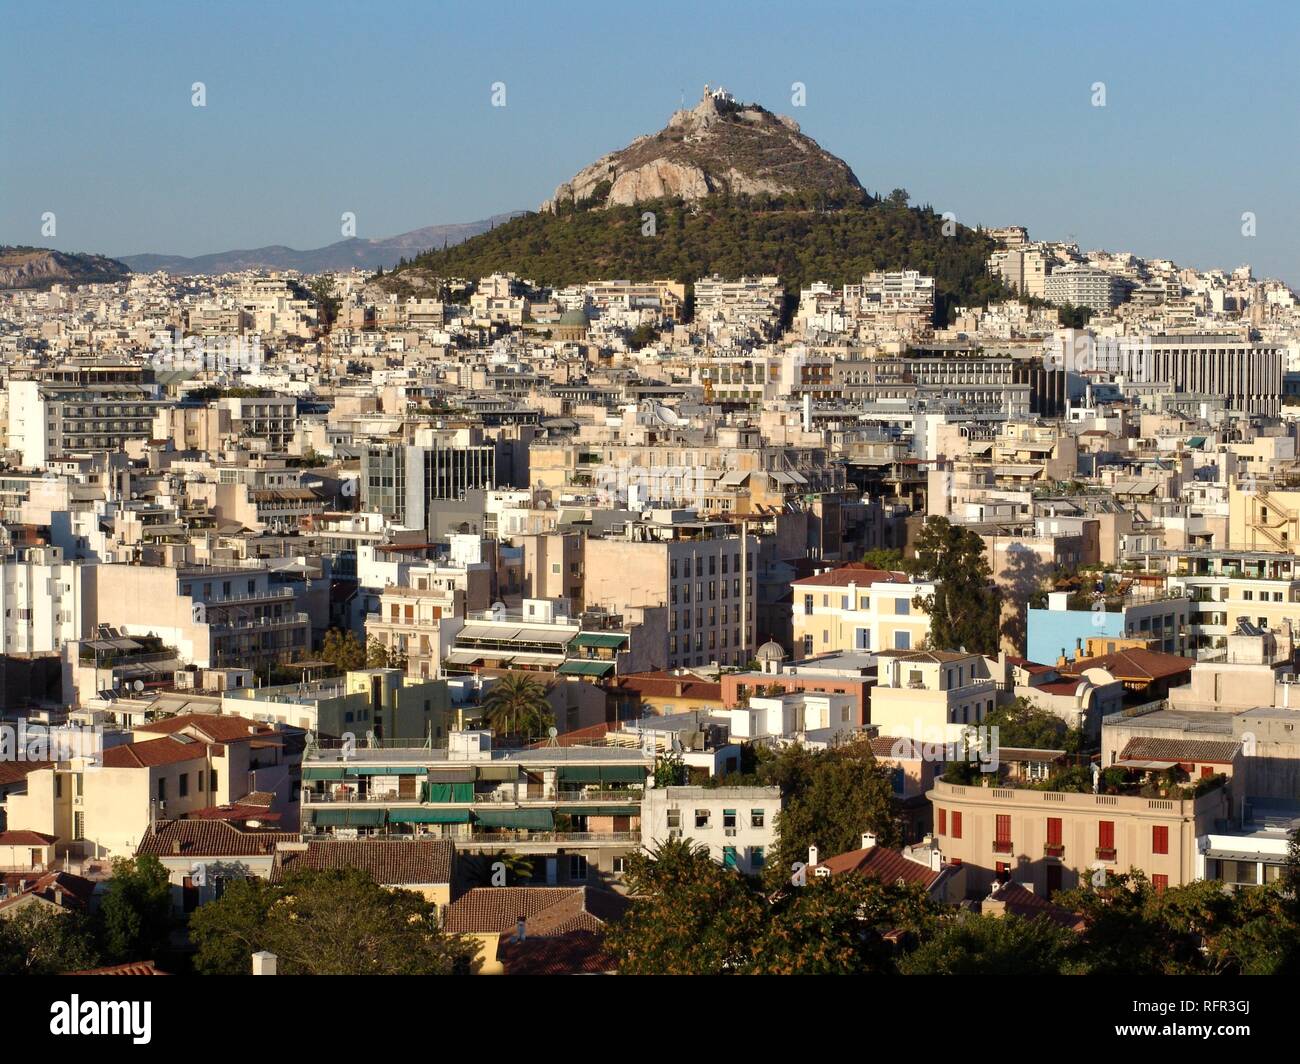 Stadtzentrum, Mount Lykavittos mit der Kapelle von St. George, Athen, Griechenland Stockfoto